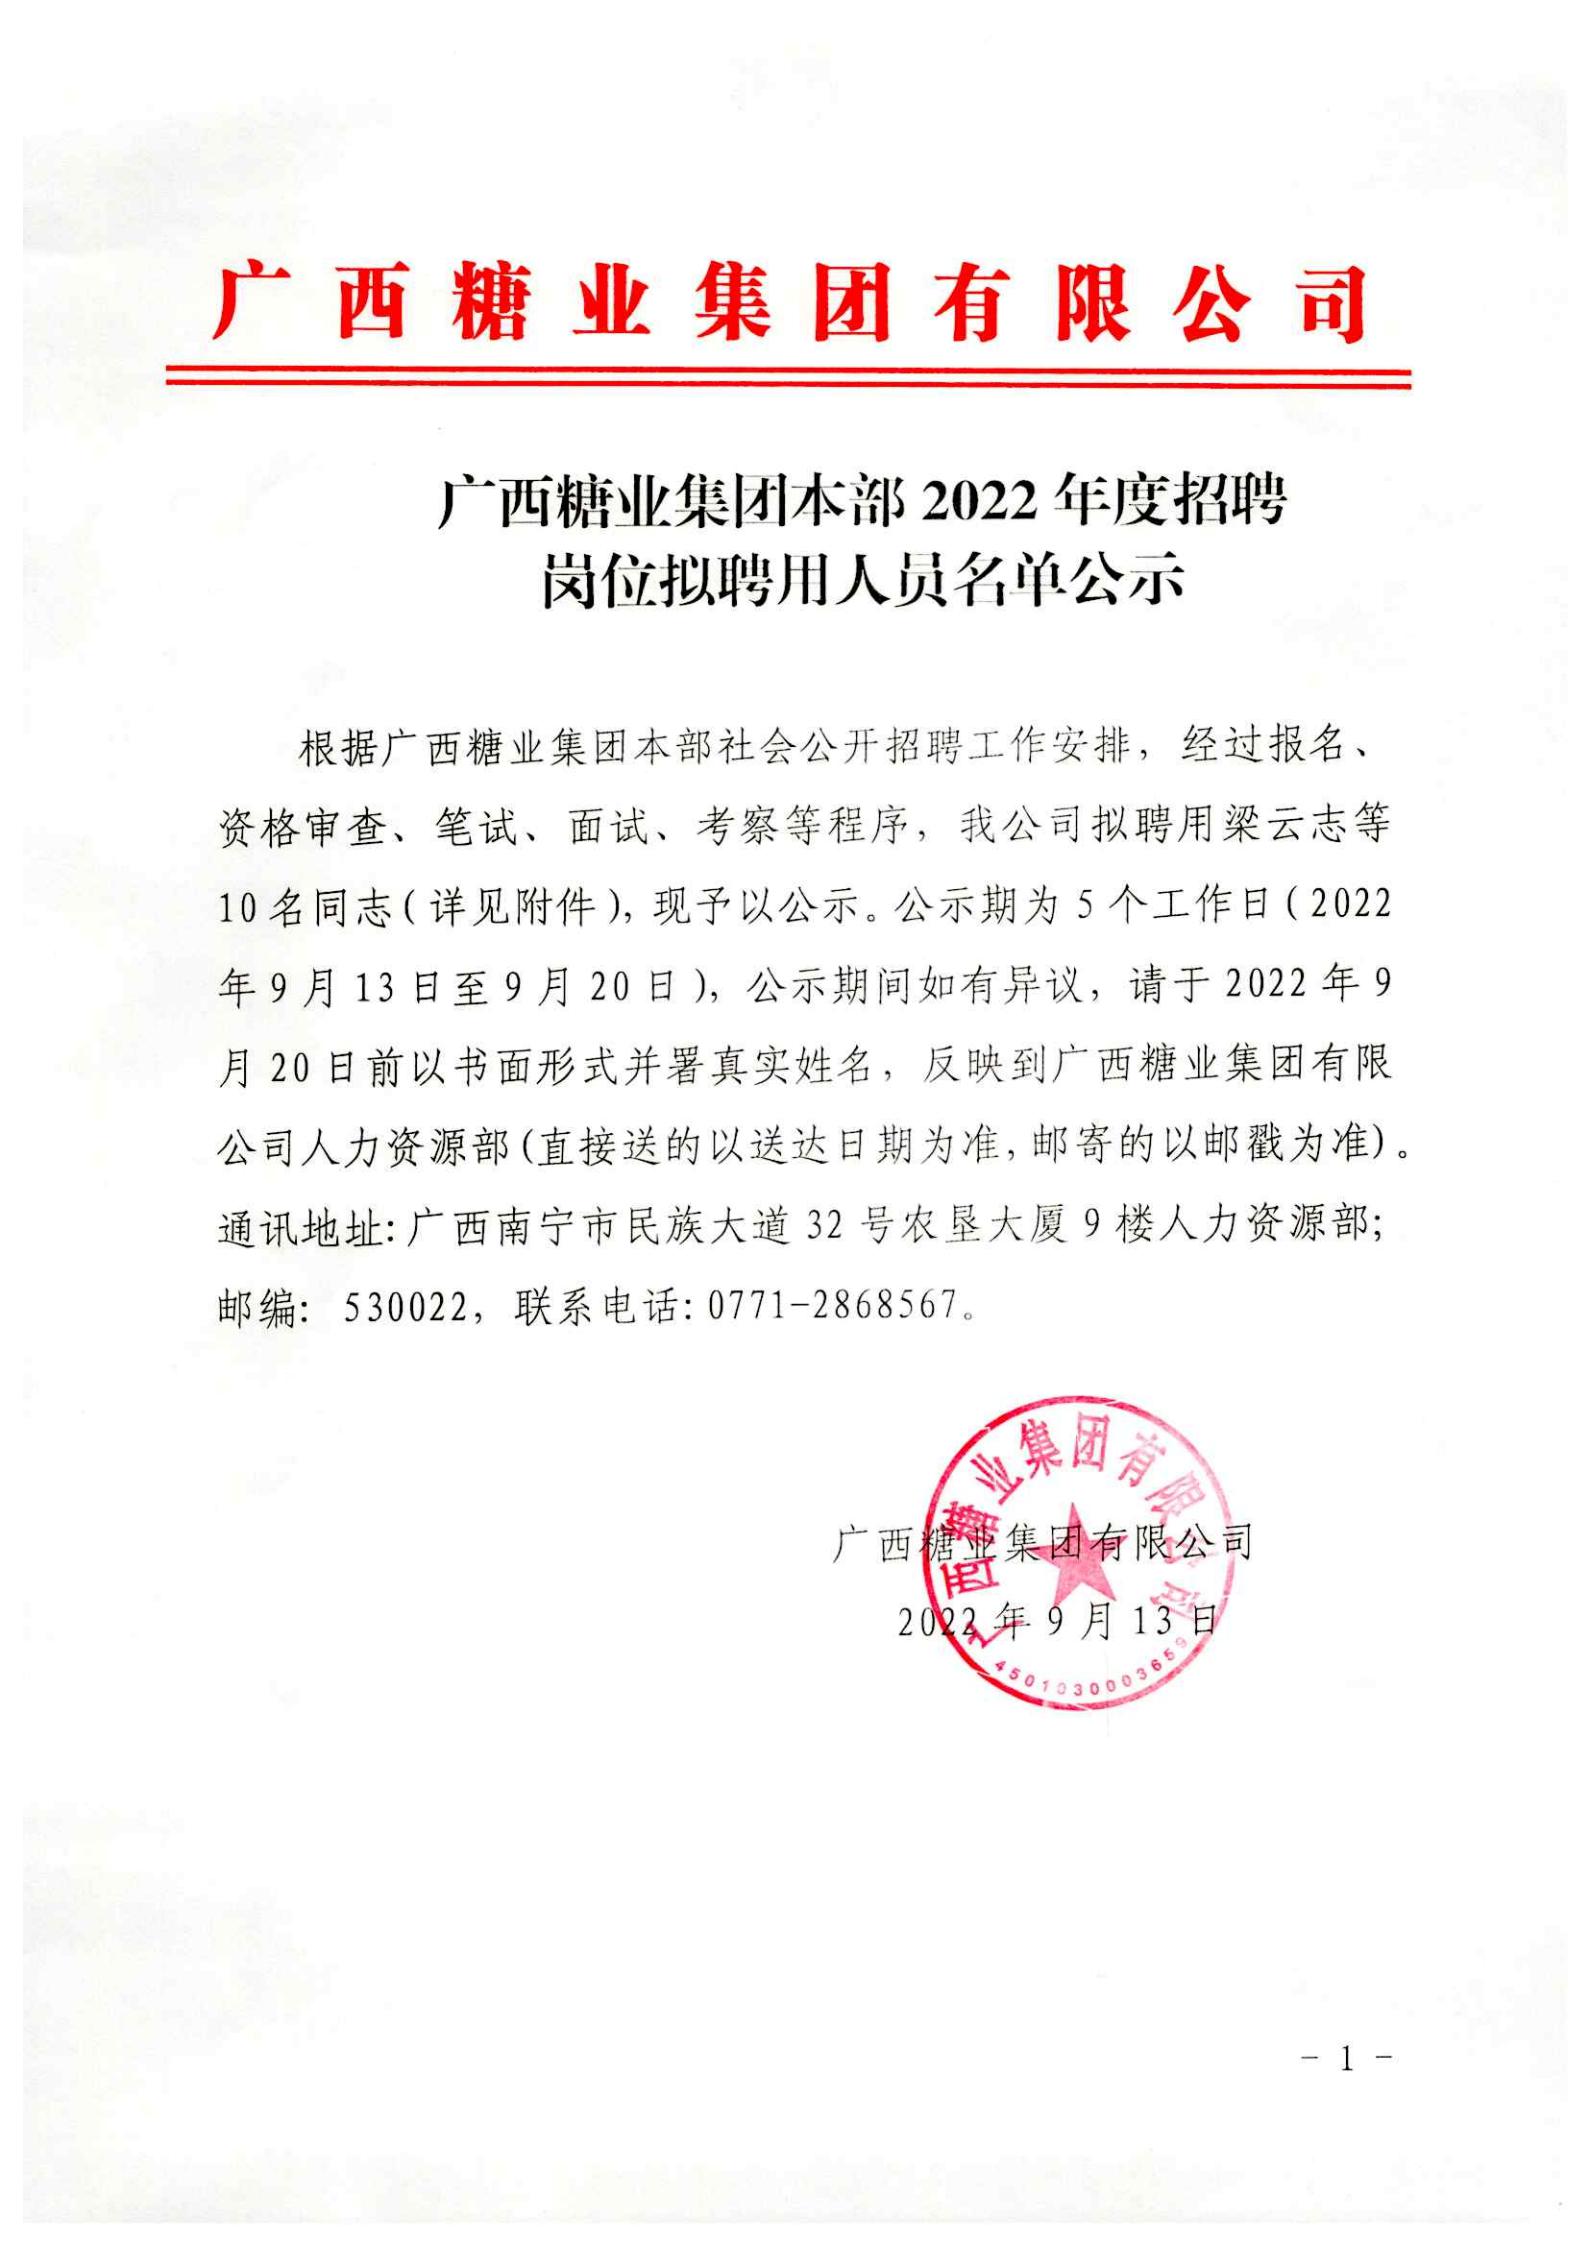 广西糖业集团本部2022年度招聘岗位拟聘用人员名单公示 (2)_00.jpg